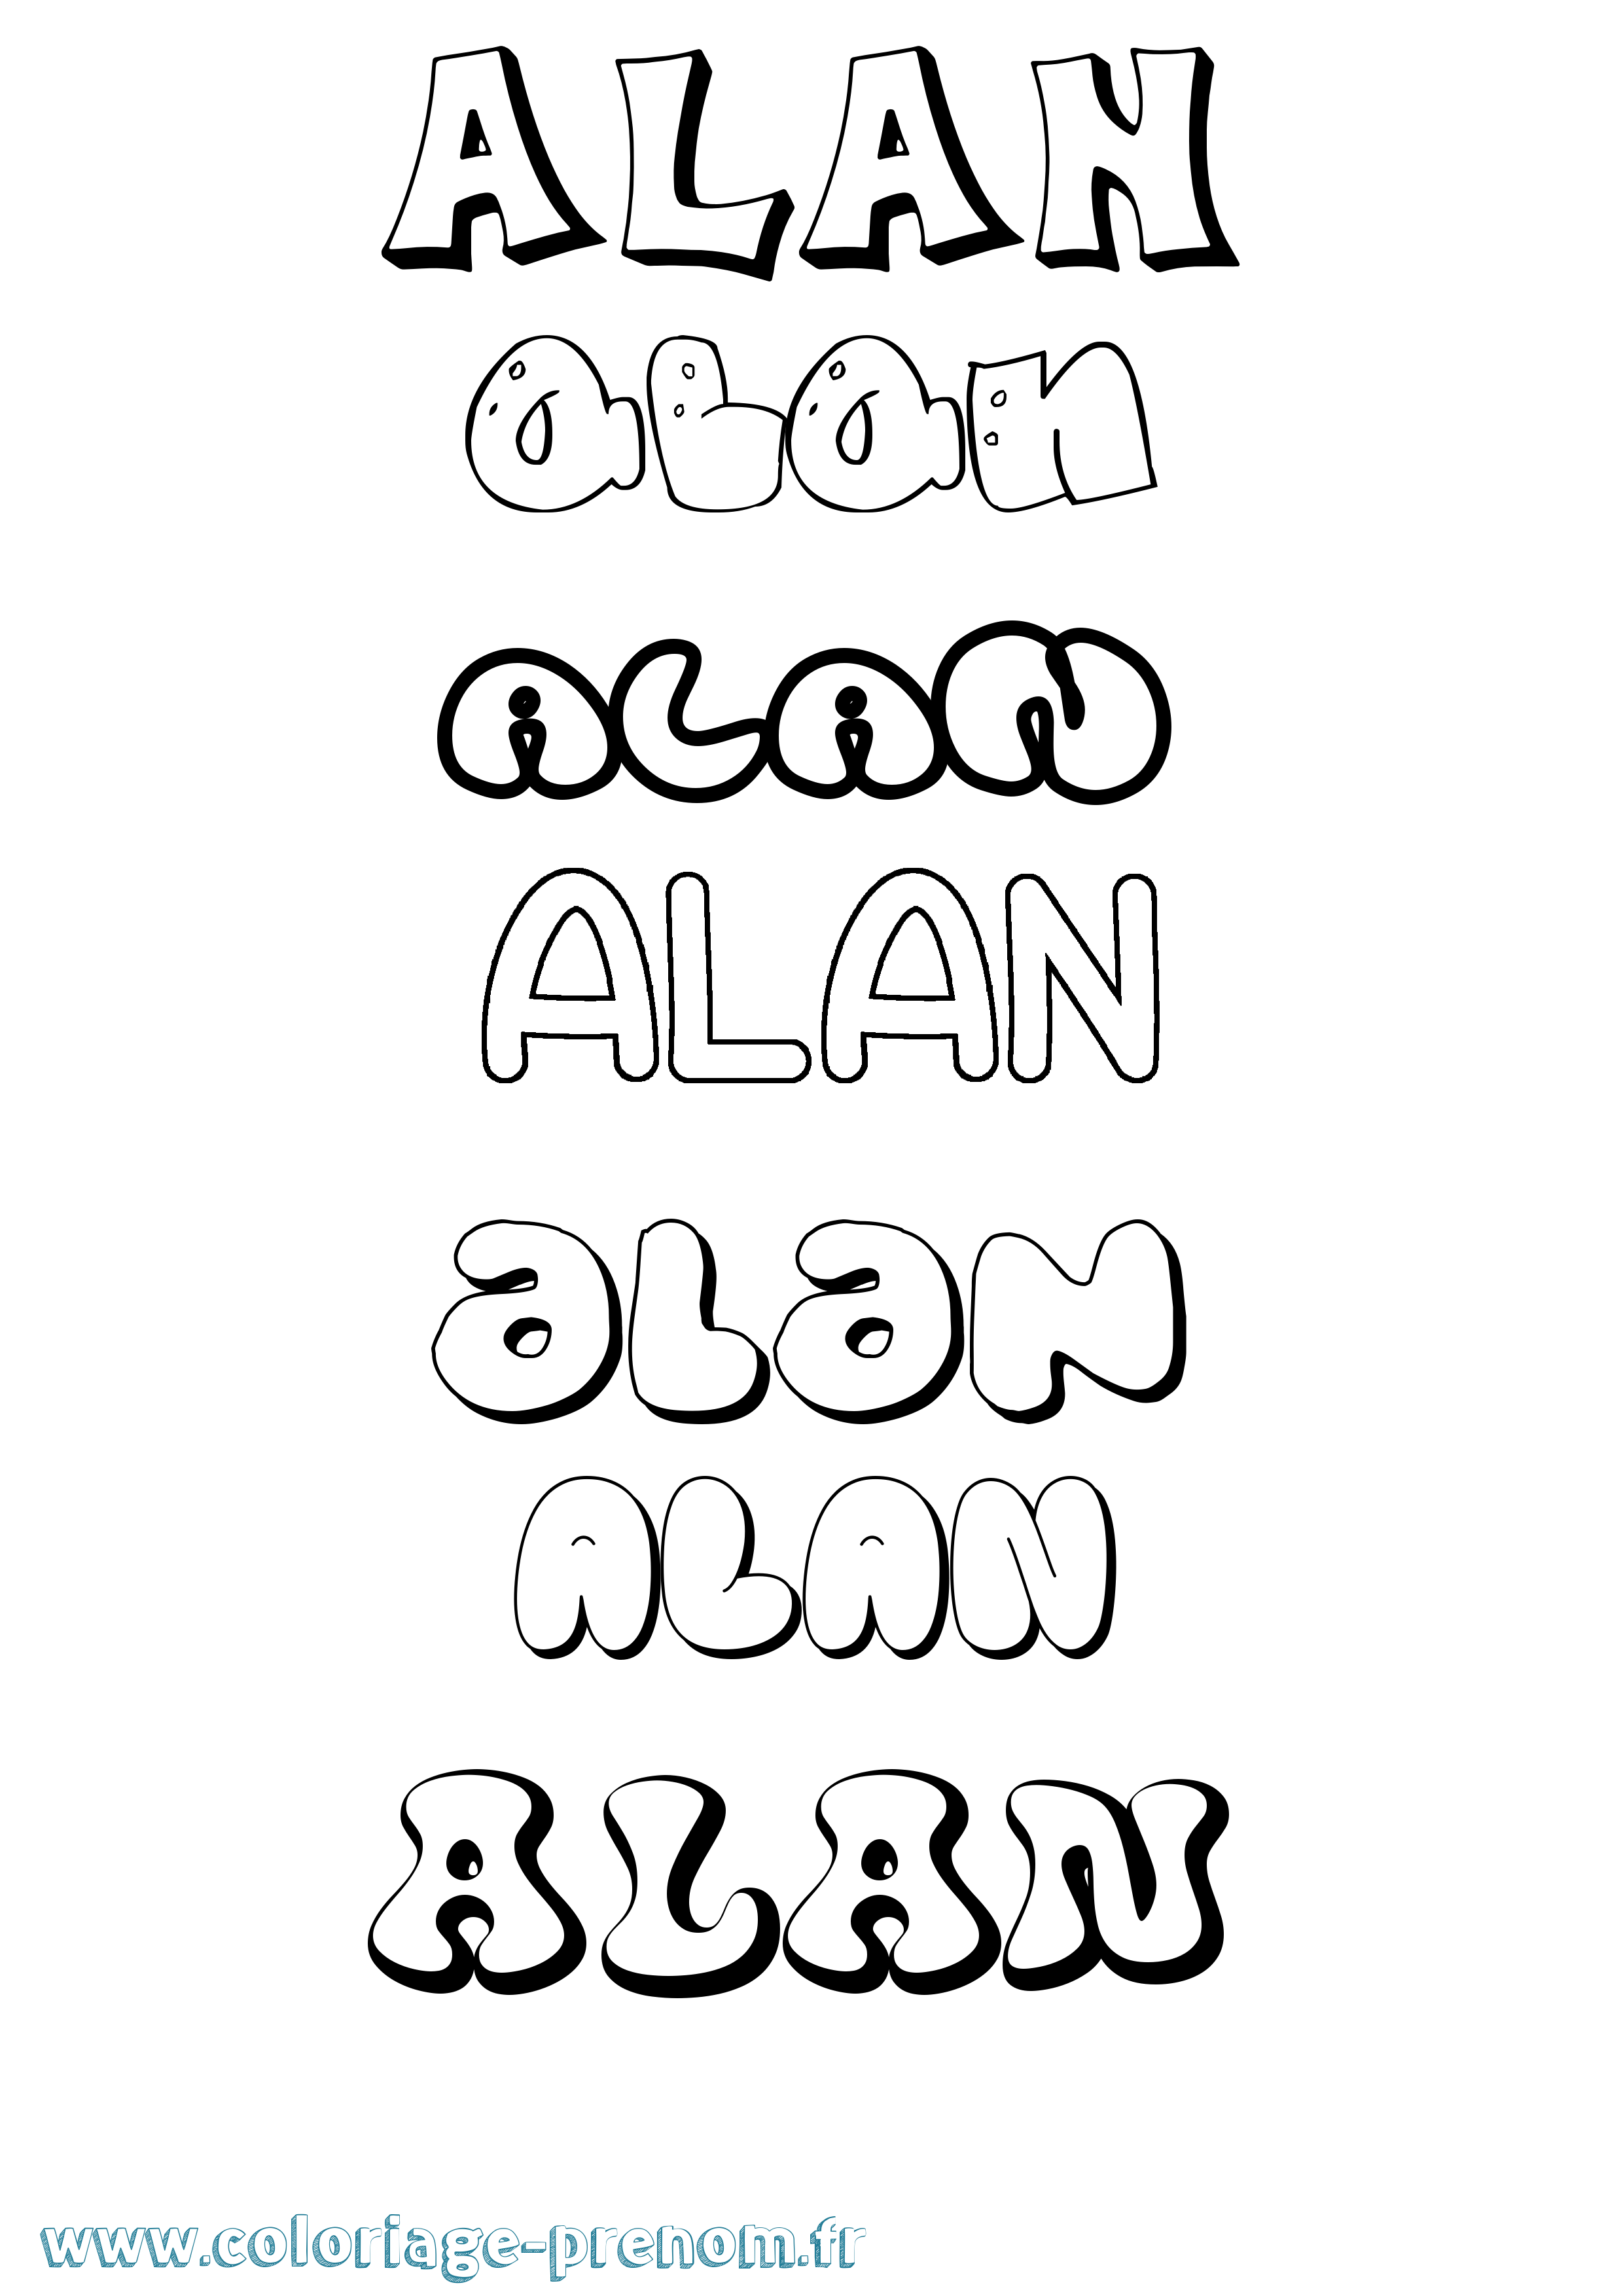 Coloriage prénom Alan Bubble